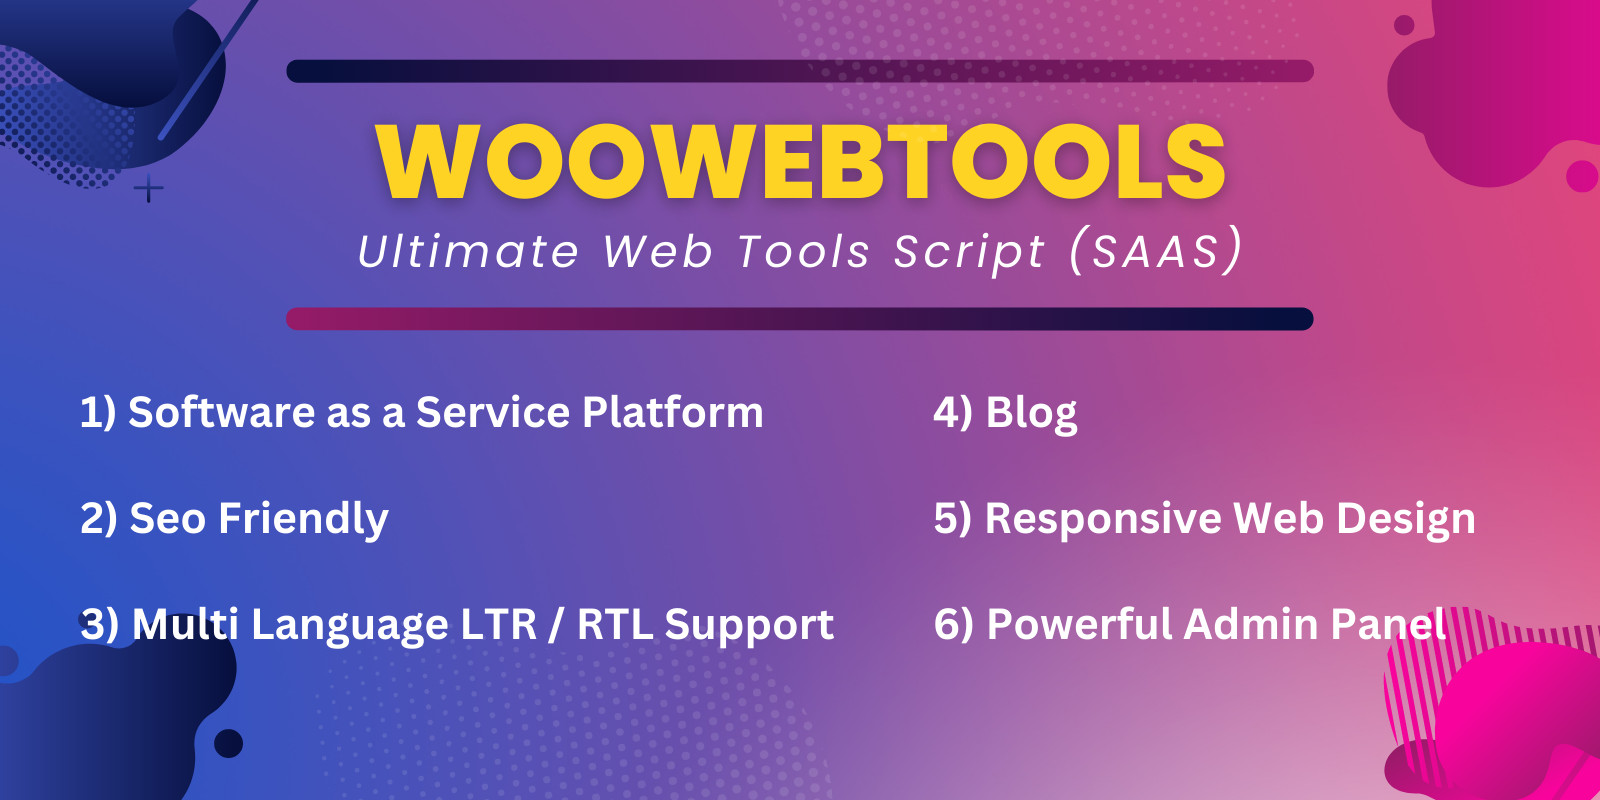 WooWebTools - Ultimate Web Tools Script SAAS